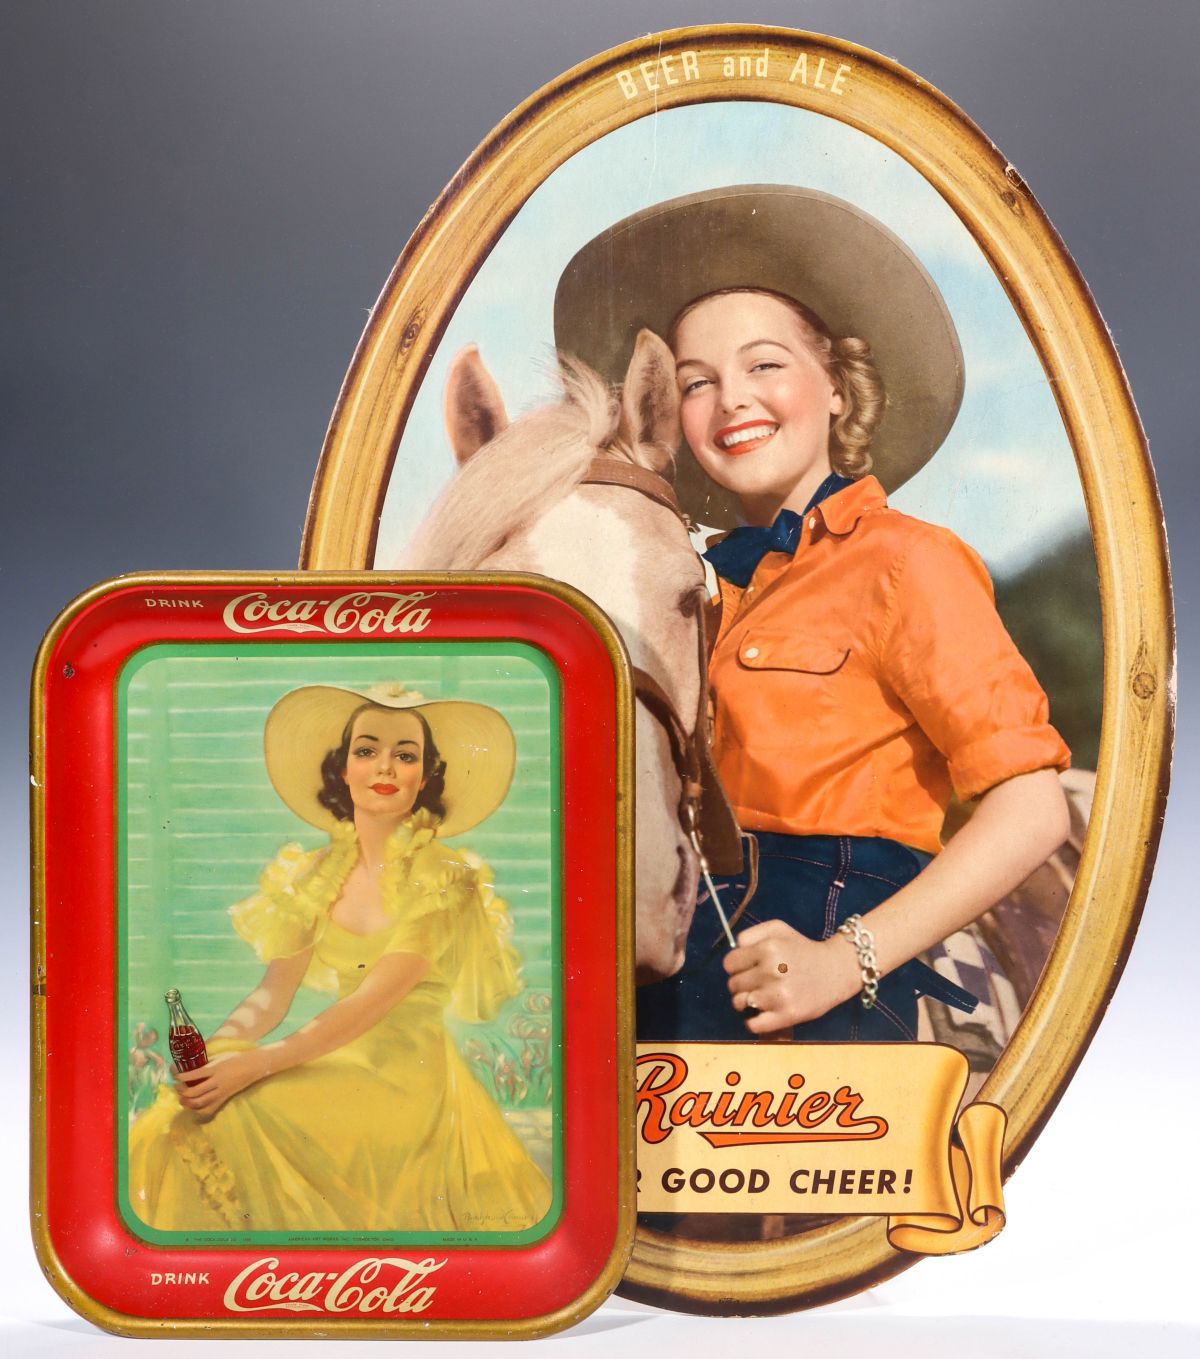 CIRCA 1940 RAINIER BEER AND COCA-COLA ADVERTISING